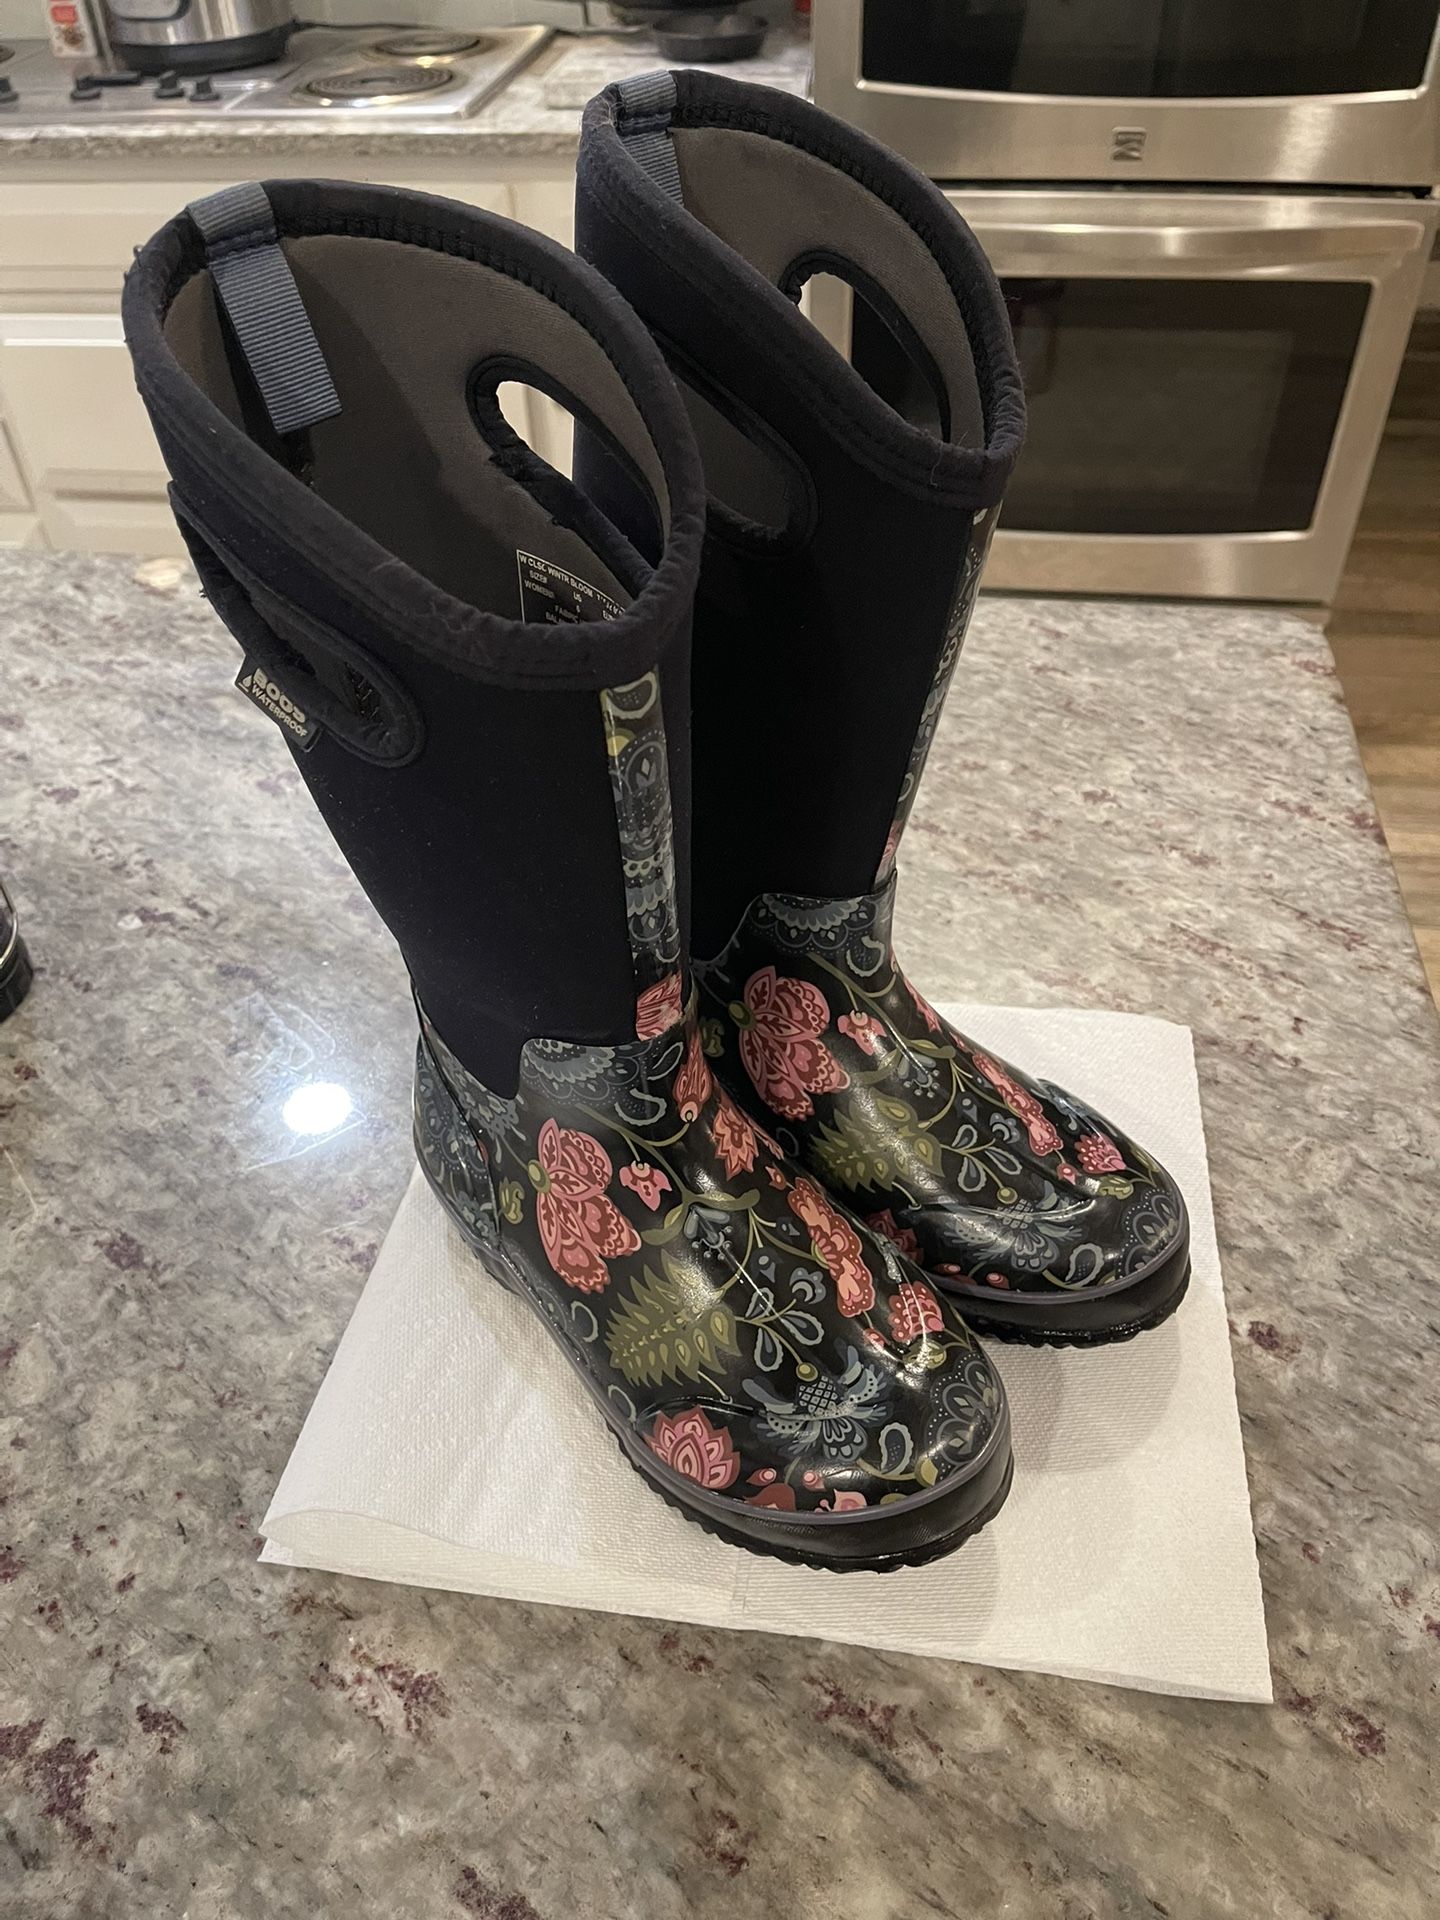 Bogs Mesa Black Floral rain boots women’s size 6